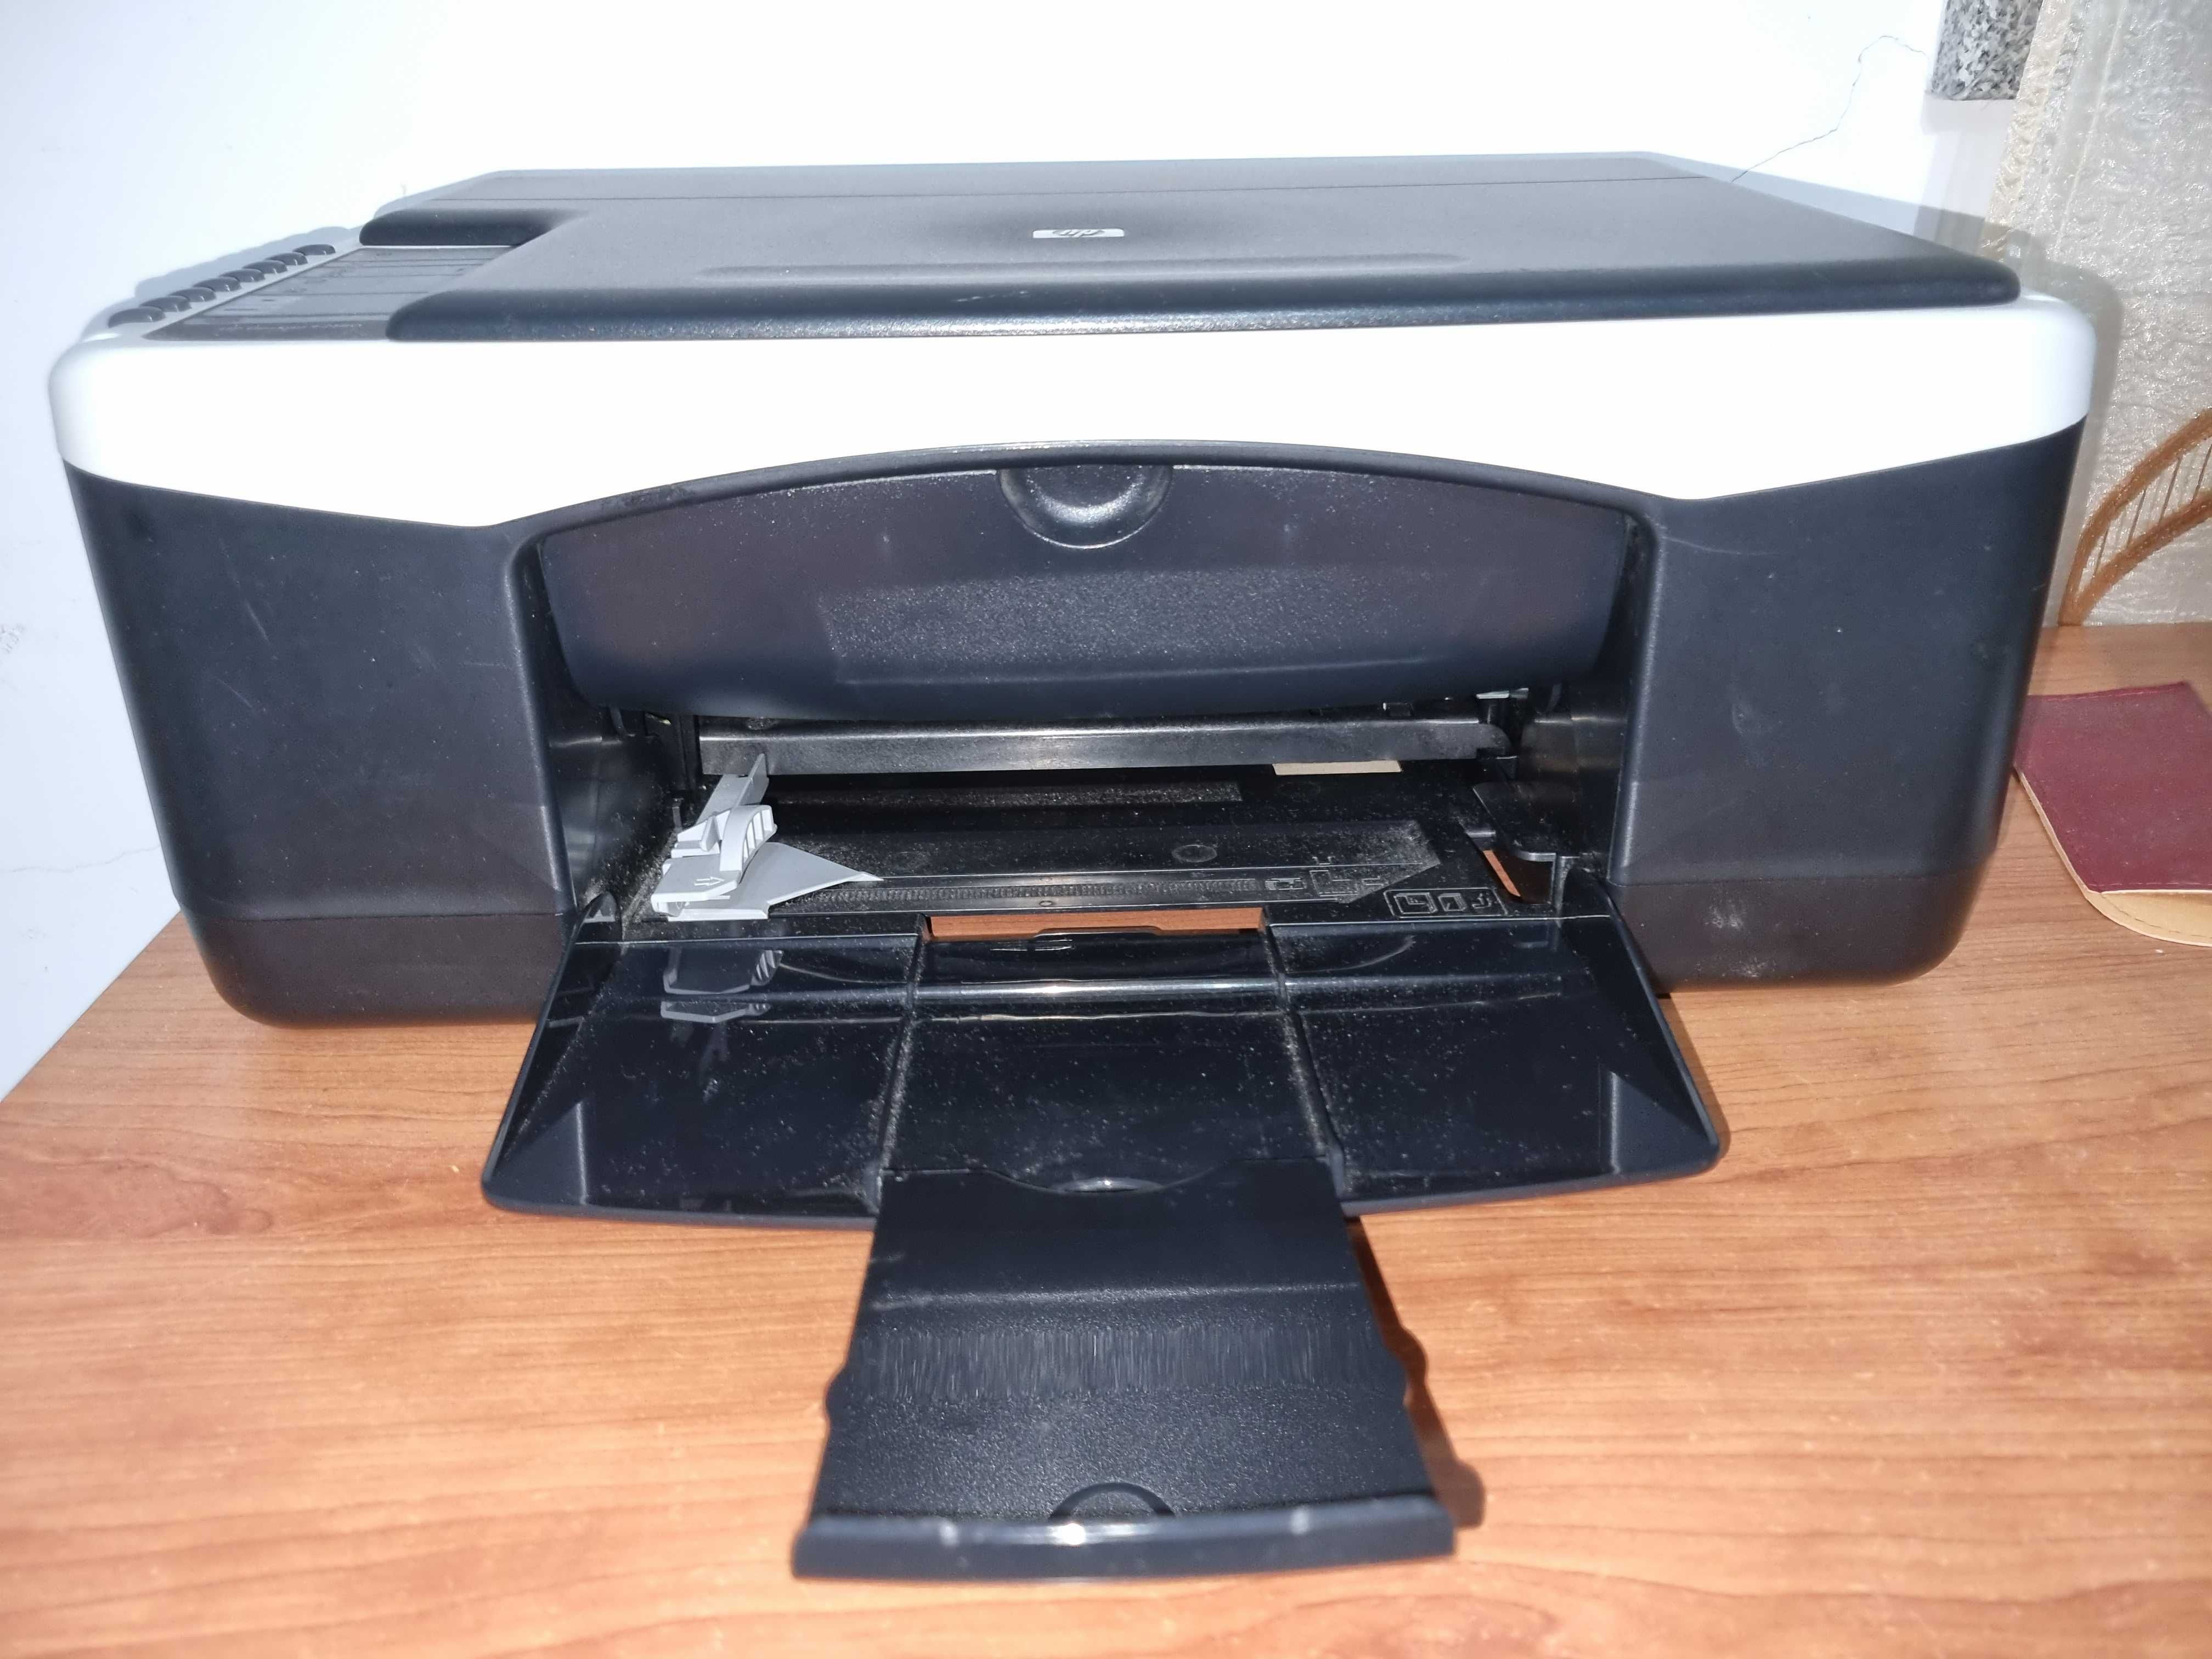 Impressora HP Deskjet F2180